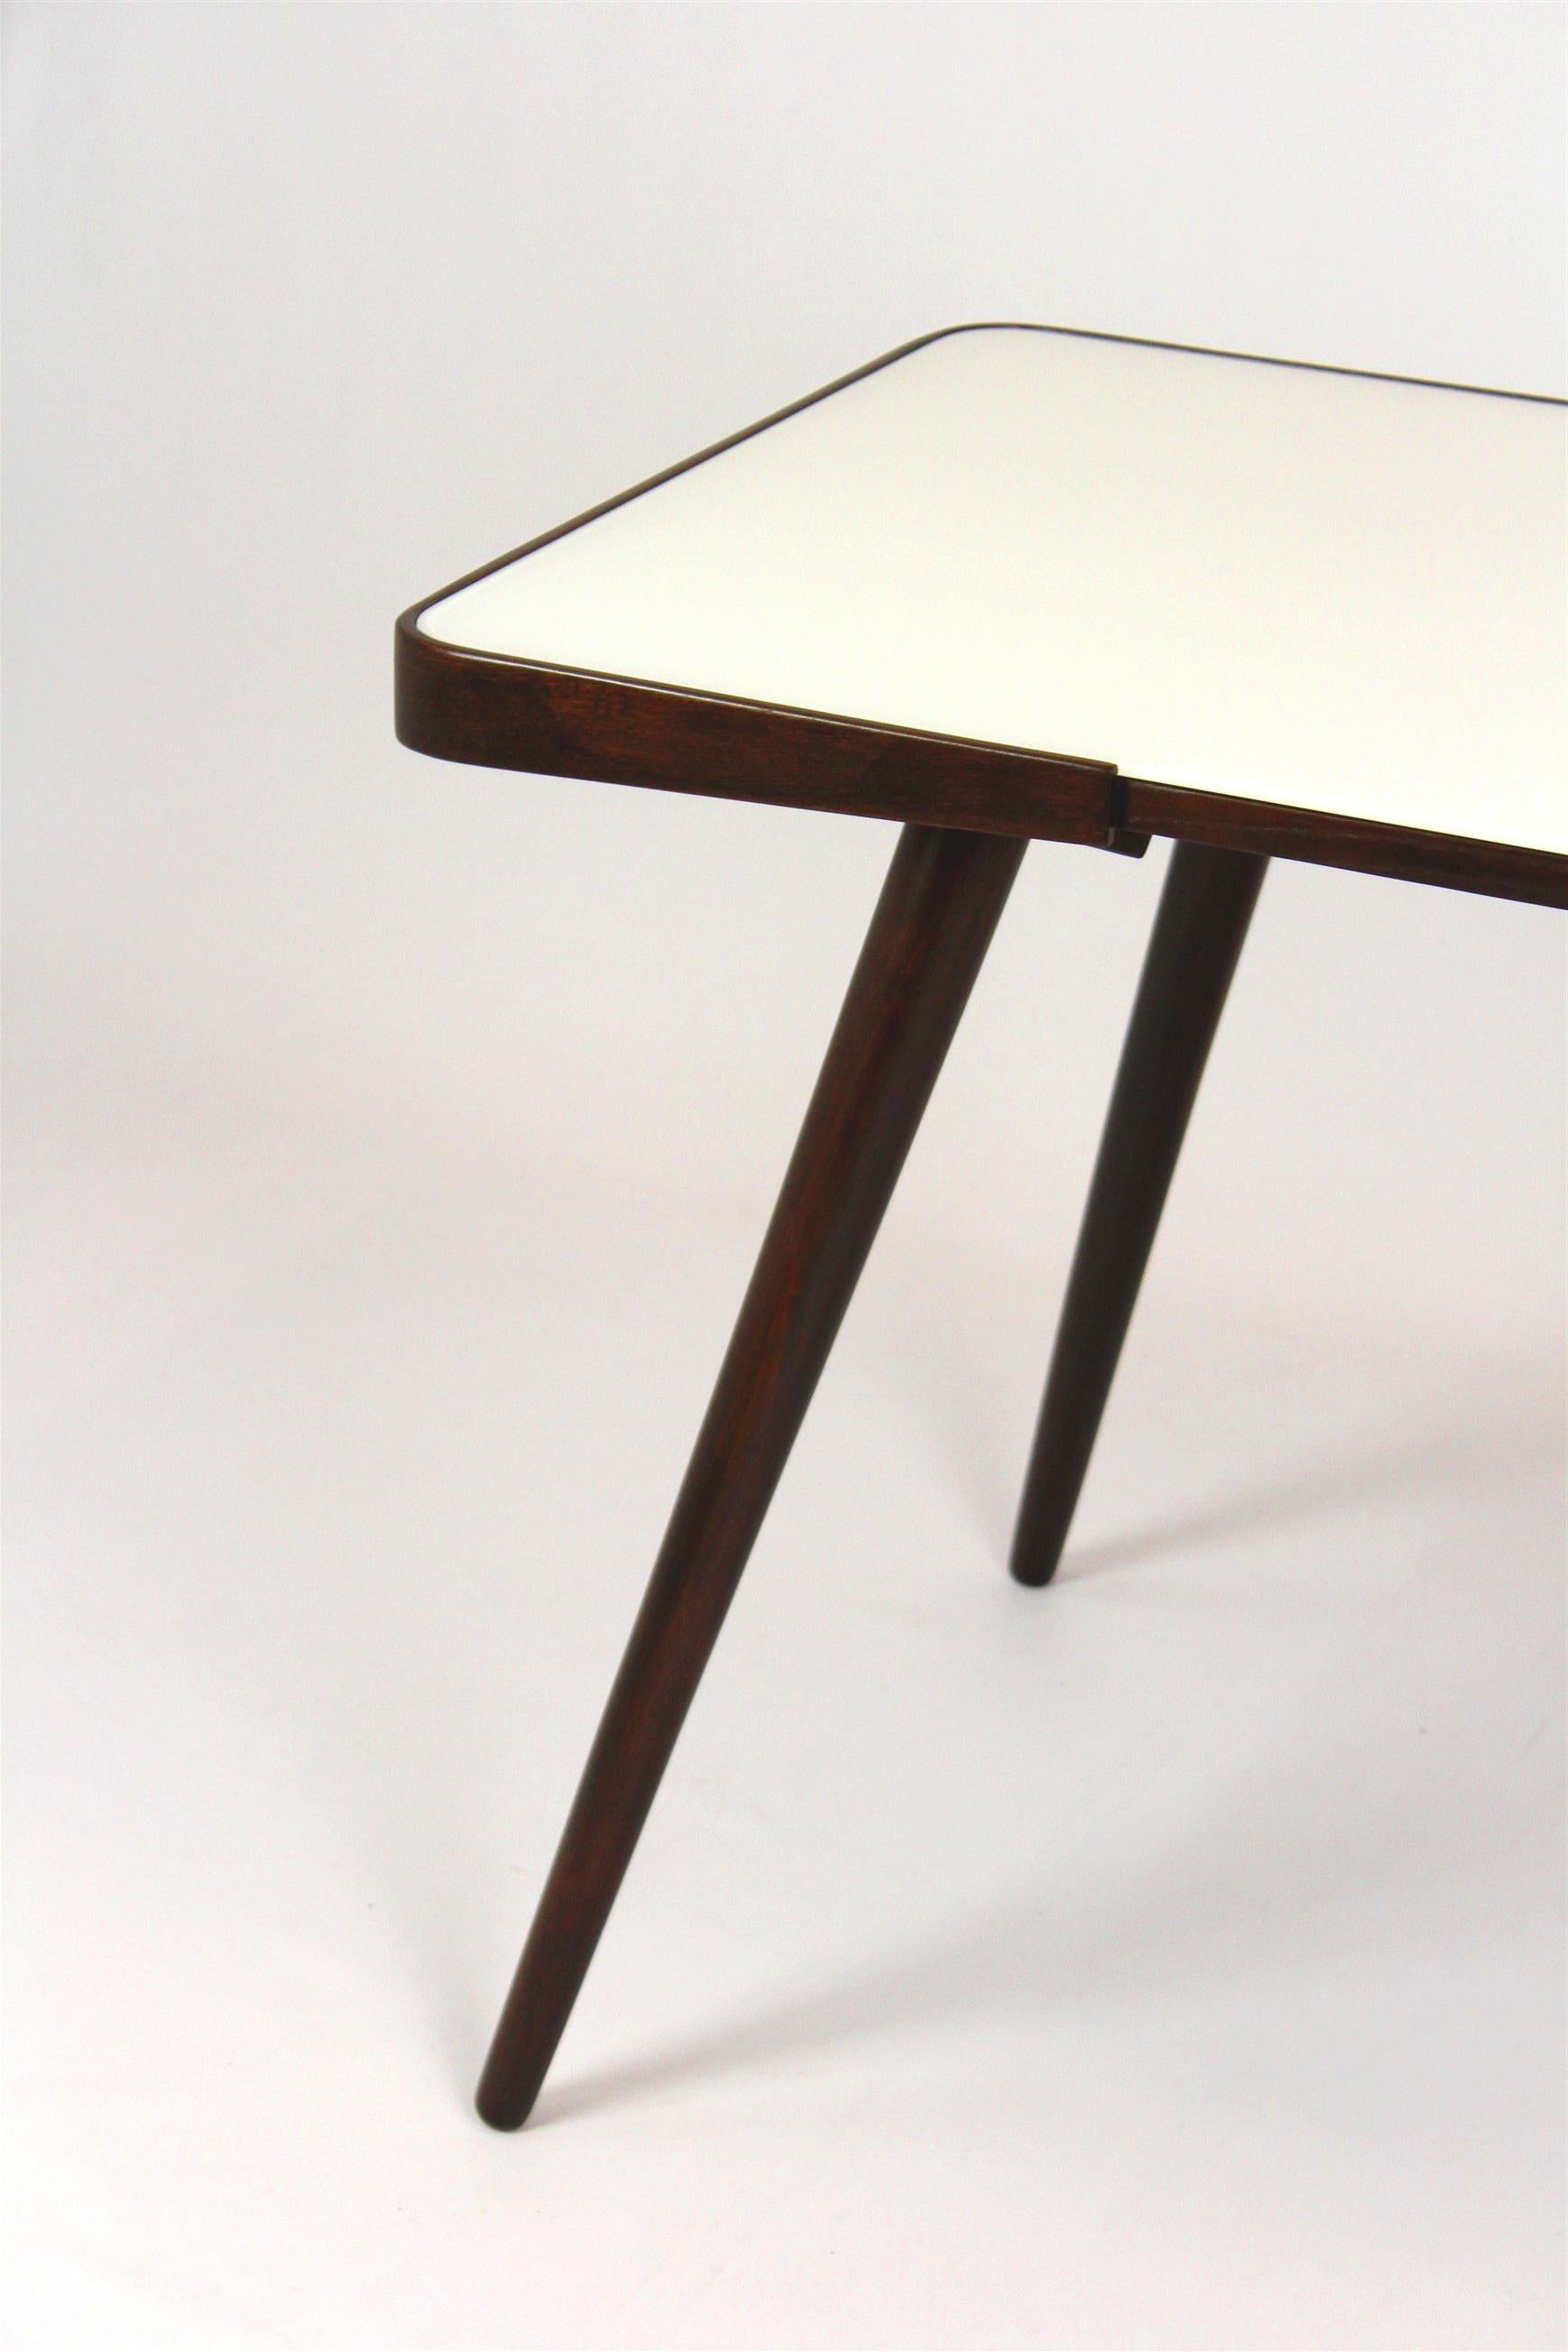 Table basse avec plateau en verre blanc. Conçue par Jiri Jiroutek et produite dans les années 1960 par Interi Praha. La table a été entièrement restaurée, bois laqué, finition satinée, nouveau plateau en verre.
Les pieds peuvent être dévissés pour